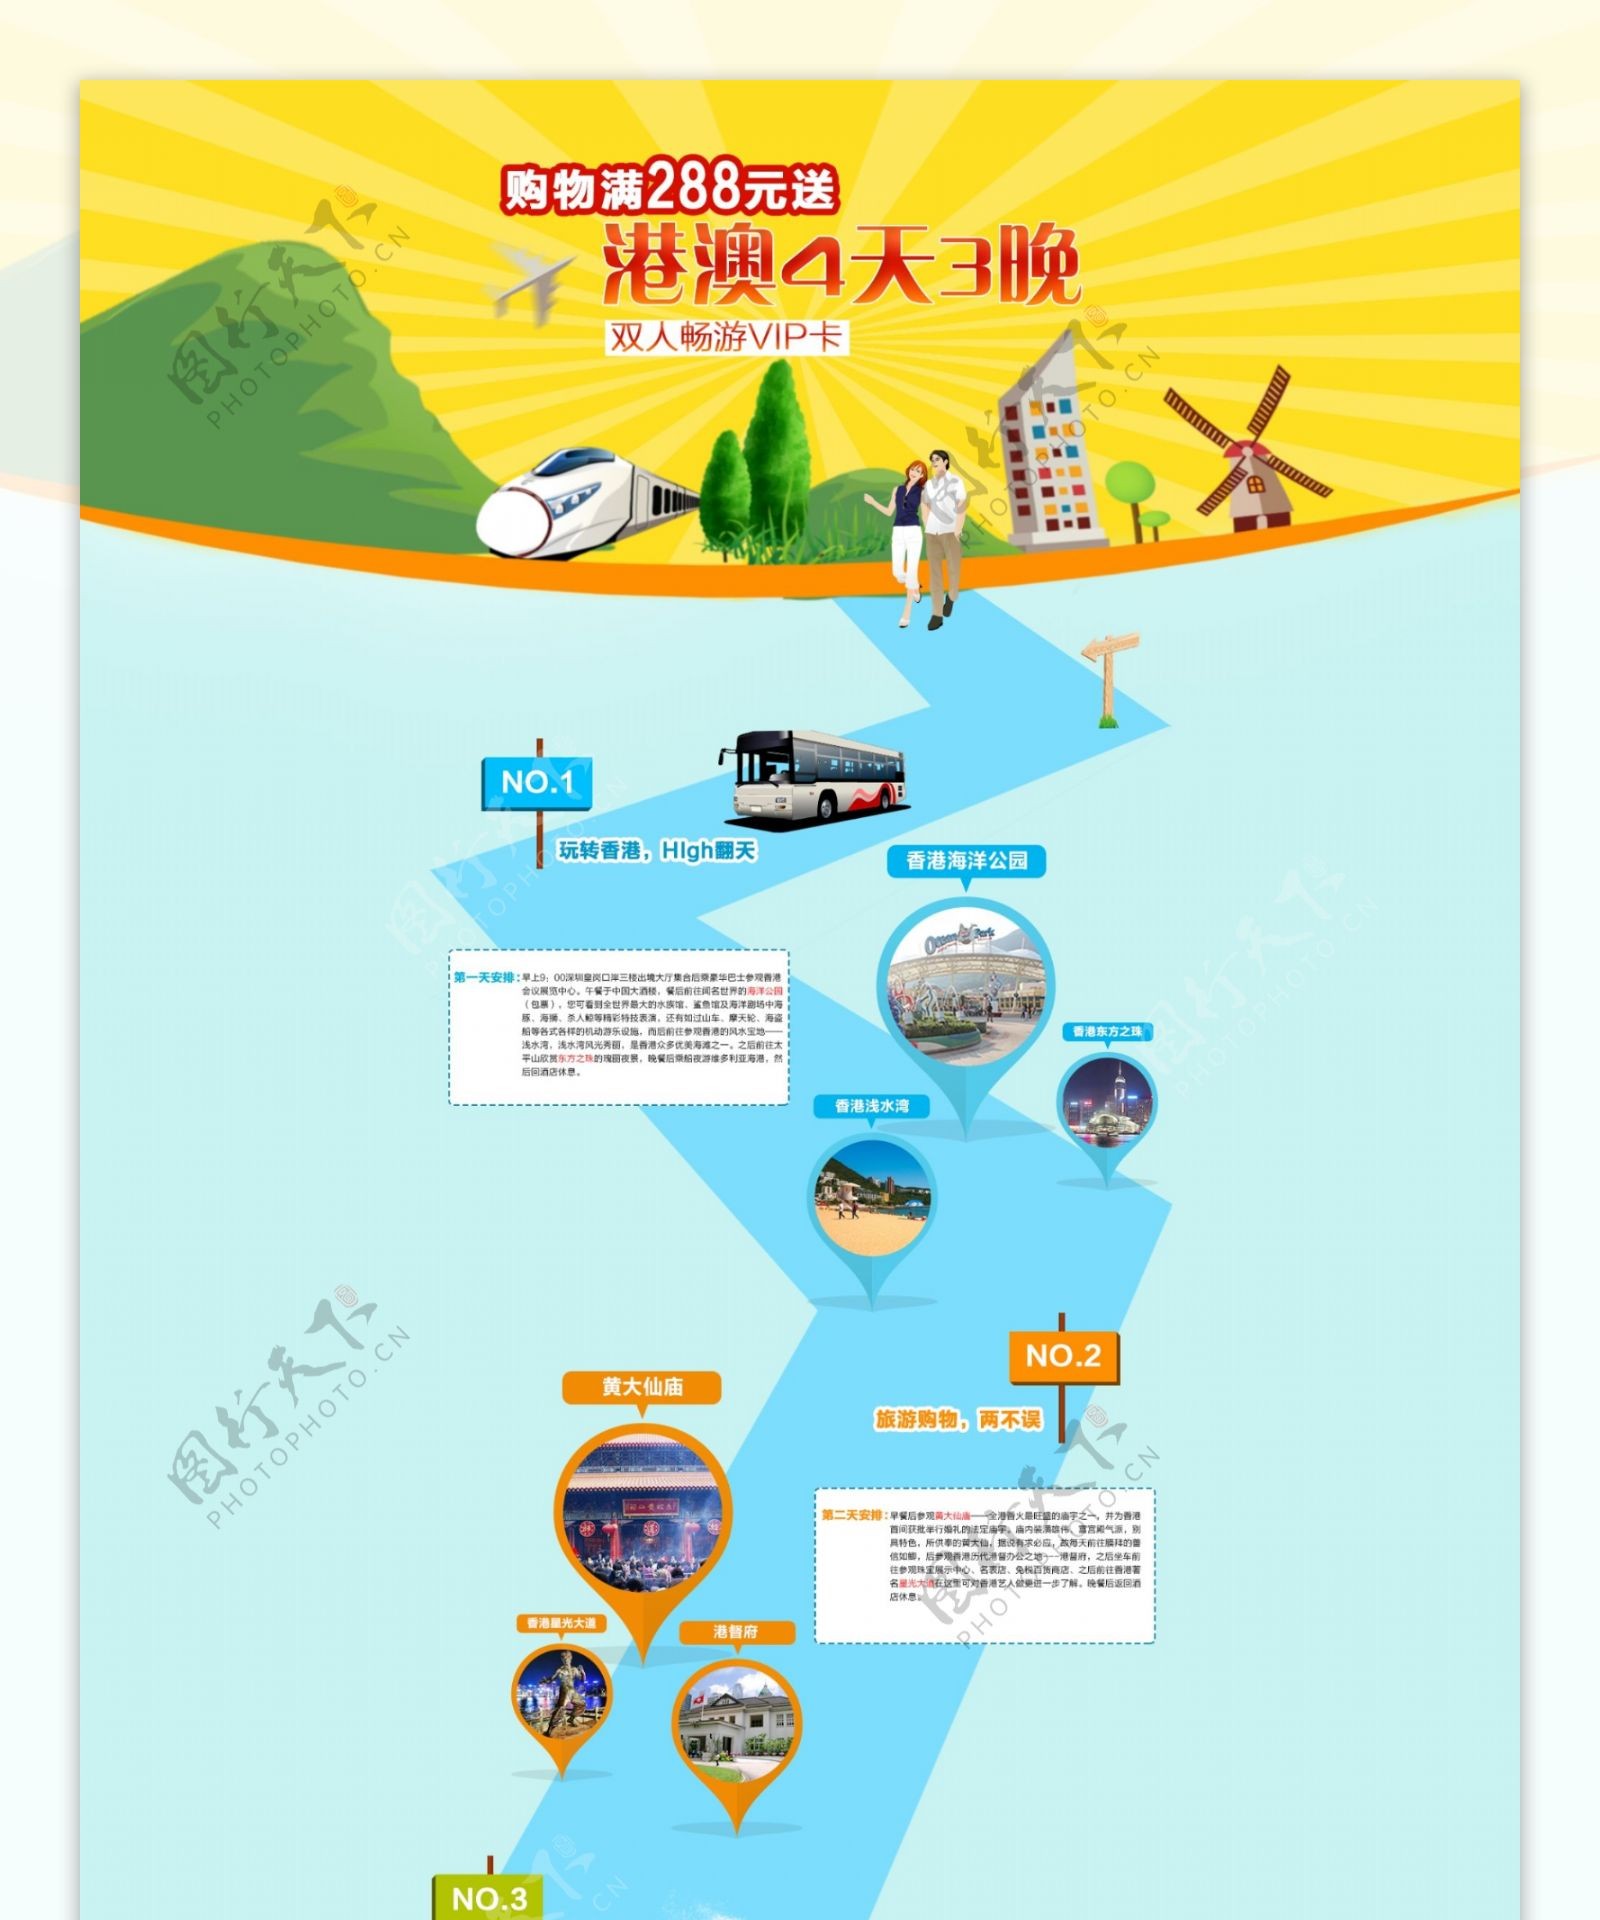 淘宝专题页面旅游游玩节假日海报